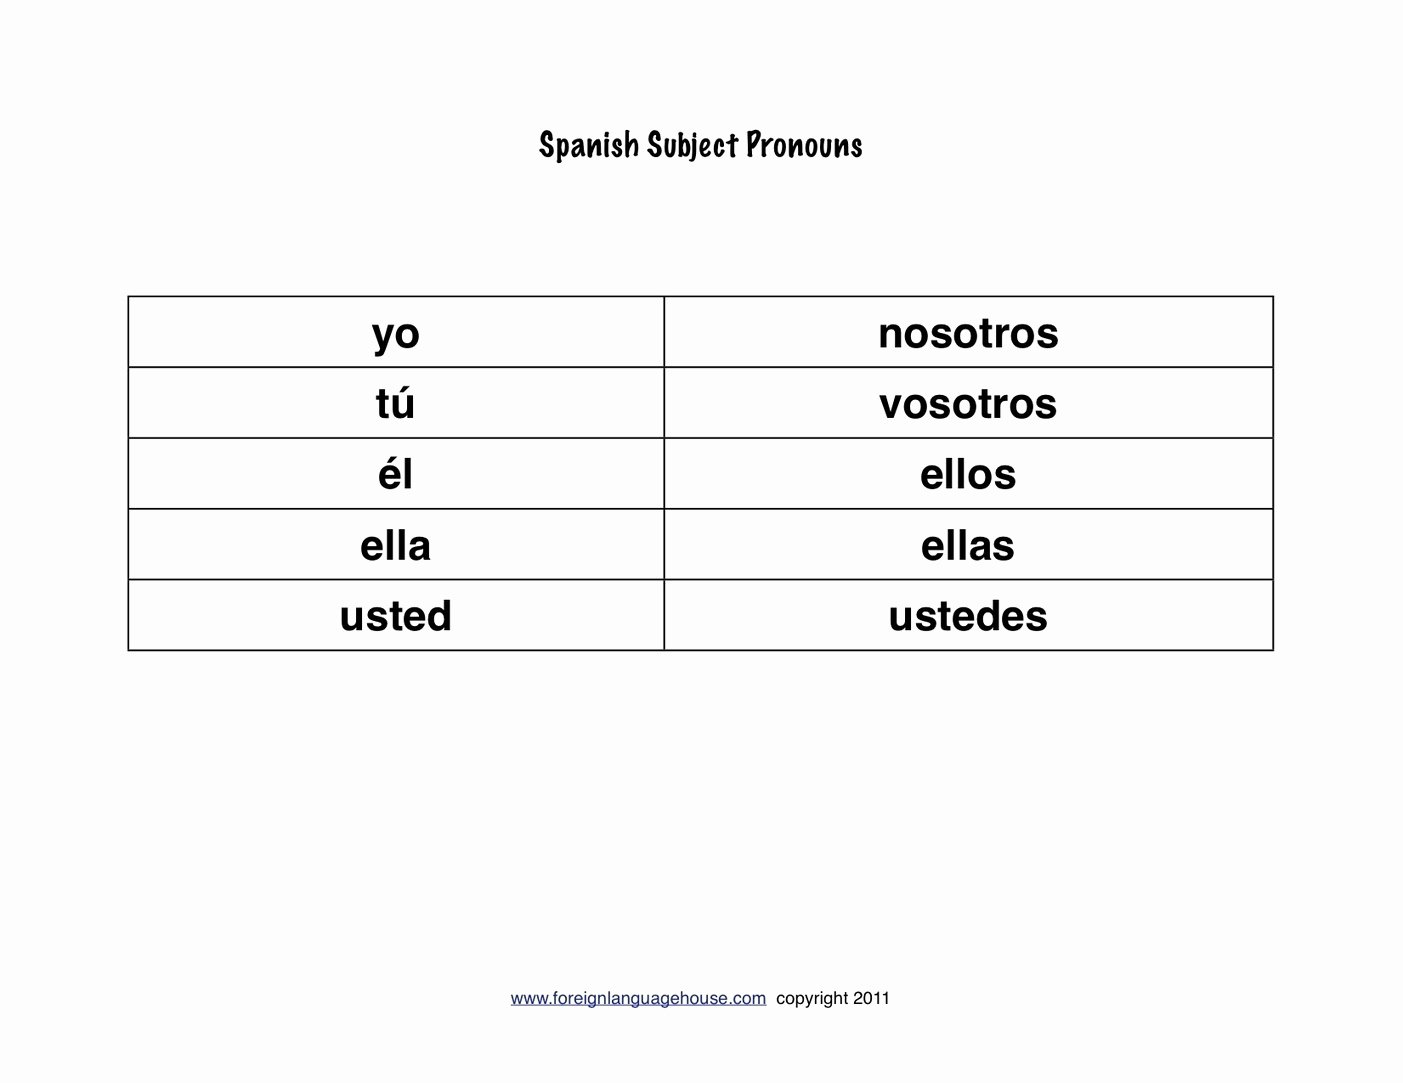 Spanish Subject Pronouns Worksheet Unique Worksheet Spanish Subject Pronouns Worksheet Grass Fedjp